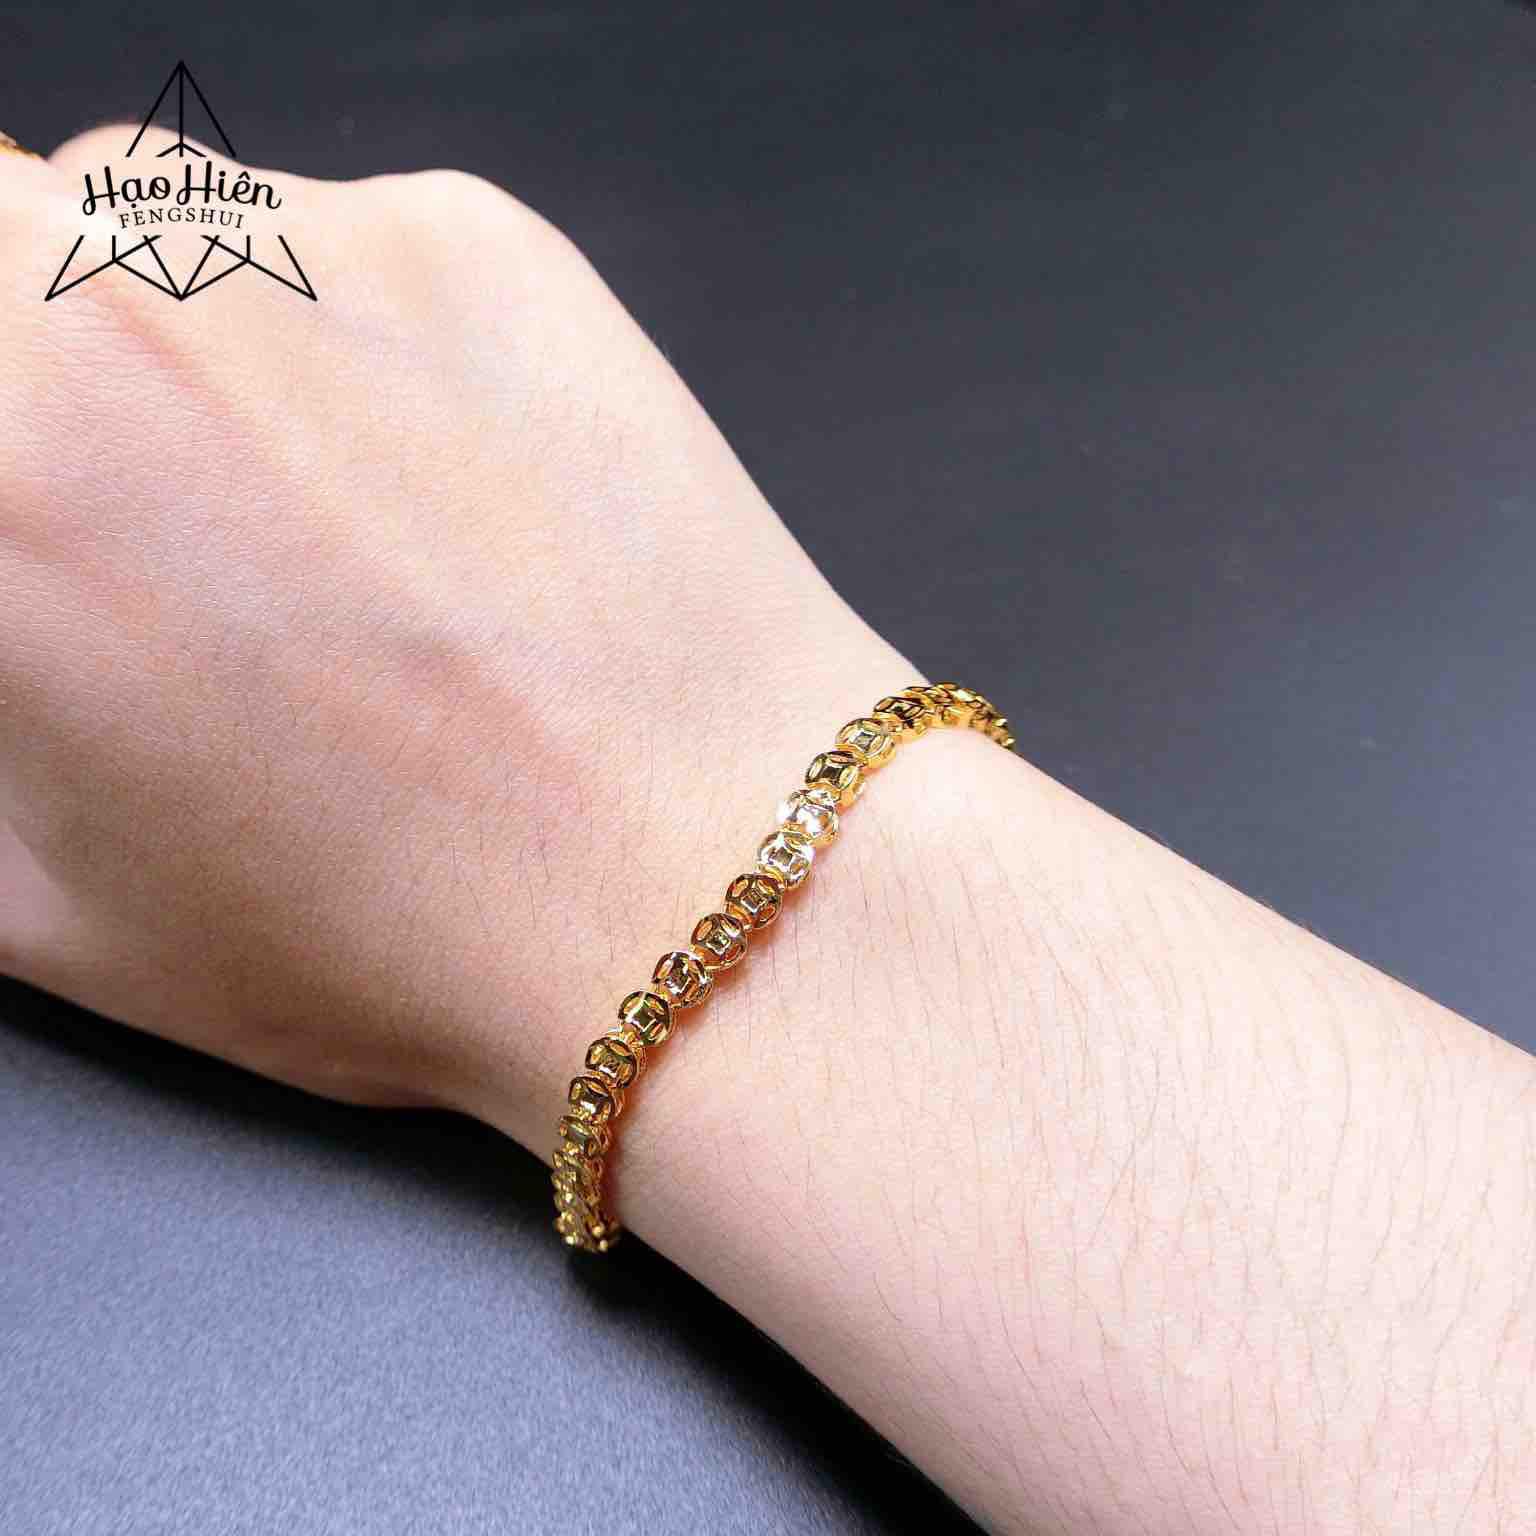 Chiếc lắc tay nữ Kim Tiền vàng mạ 18k sử dụng chất liệu vàng mạ cao cấp, mang lại cho bạn vẻ đẹp sang trọng và quý phái. Đây cũng là món quà tặng đầy ý nghĩa và giá trị cho người phụ nữ của bạn.